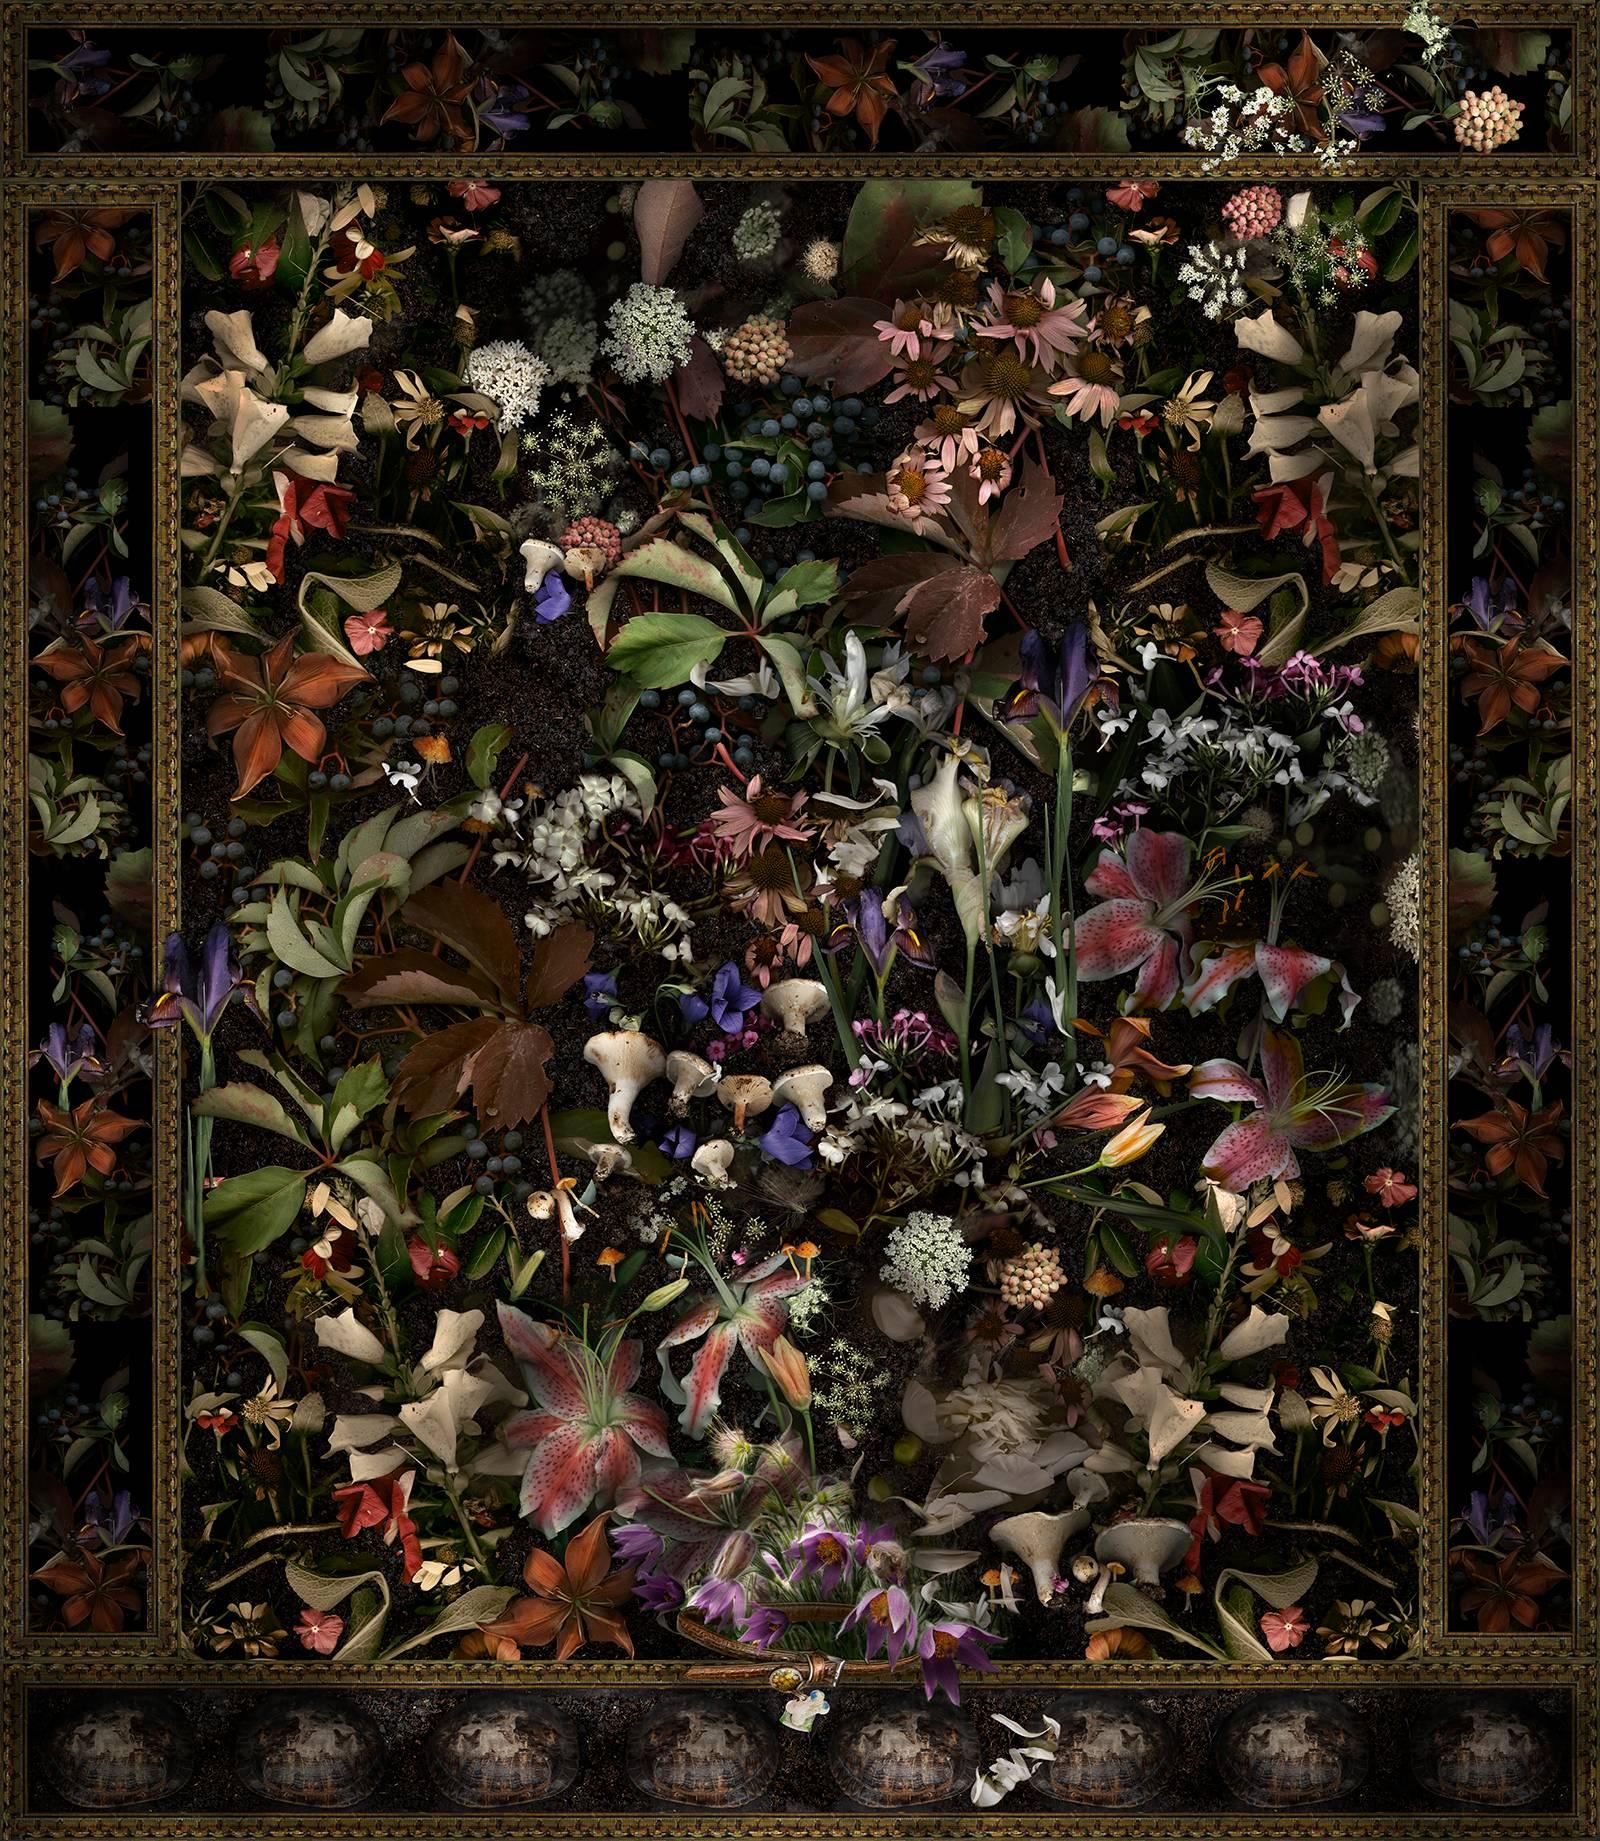 Still-Life Photograph Lisa A. Frank - Scout A, très bon chien : Impression numérique de natures mortes florales de style baroque moderne